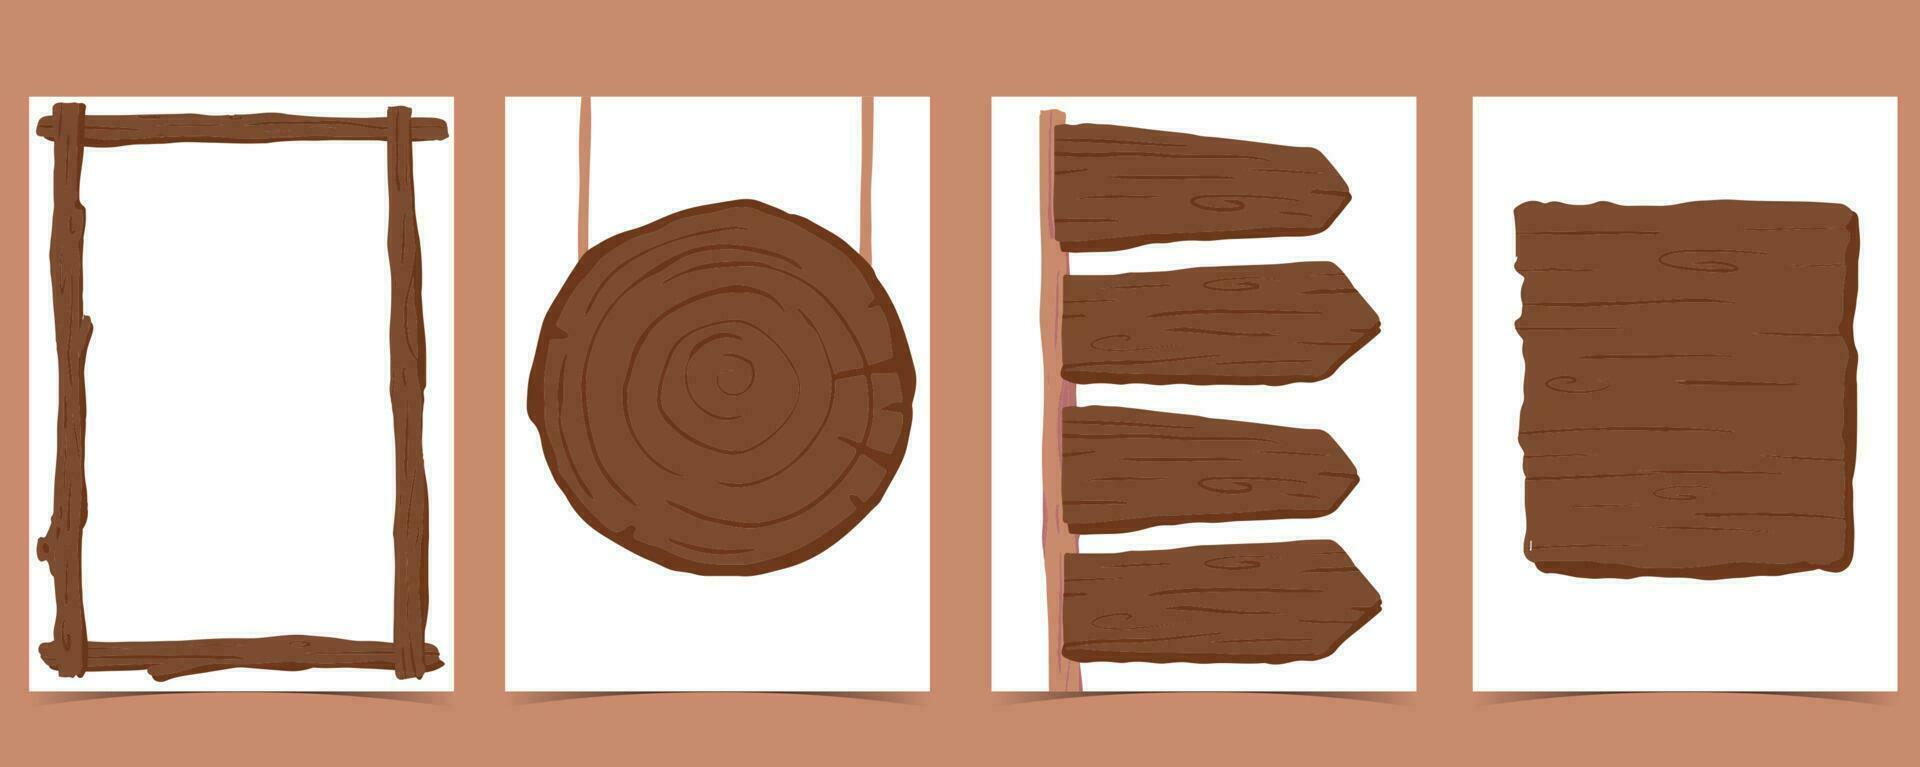 madera marco colección de safari antecedentes set.editable vector ilustración para cumpleaños invitación,postal y pegatina